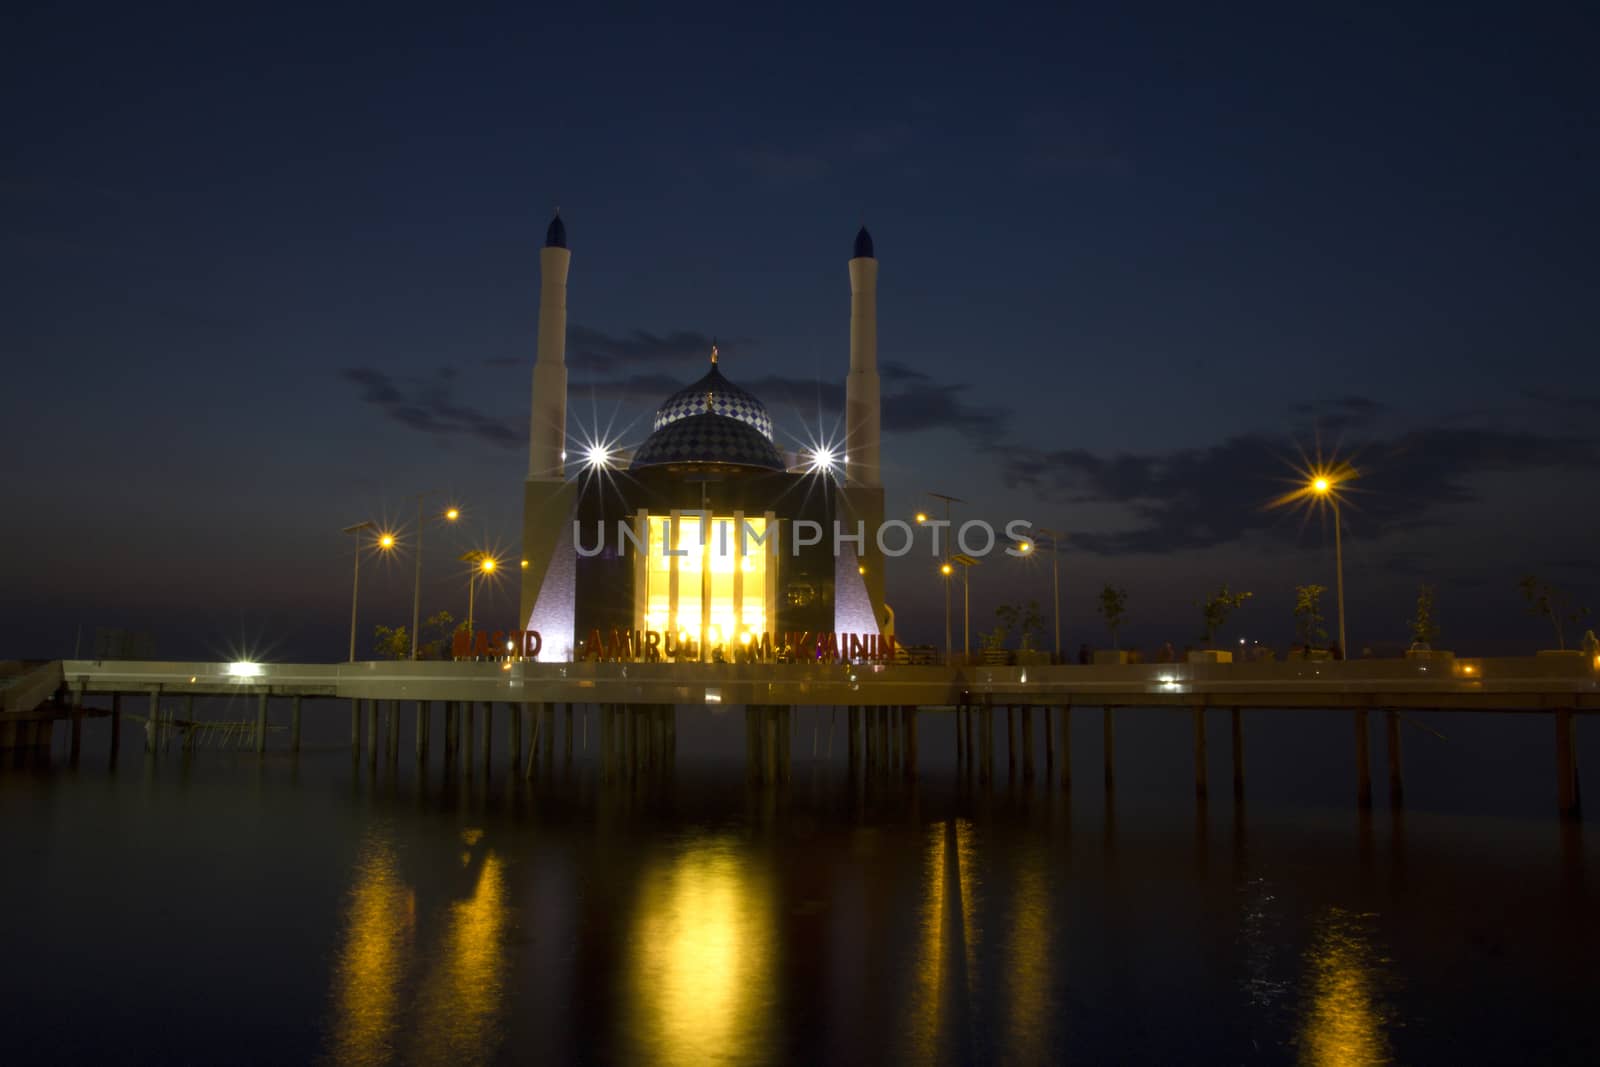 Amirul mukmini mosque by antonihalim